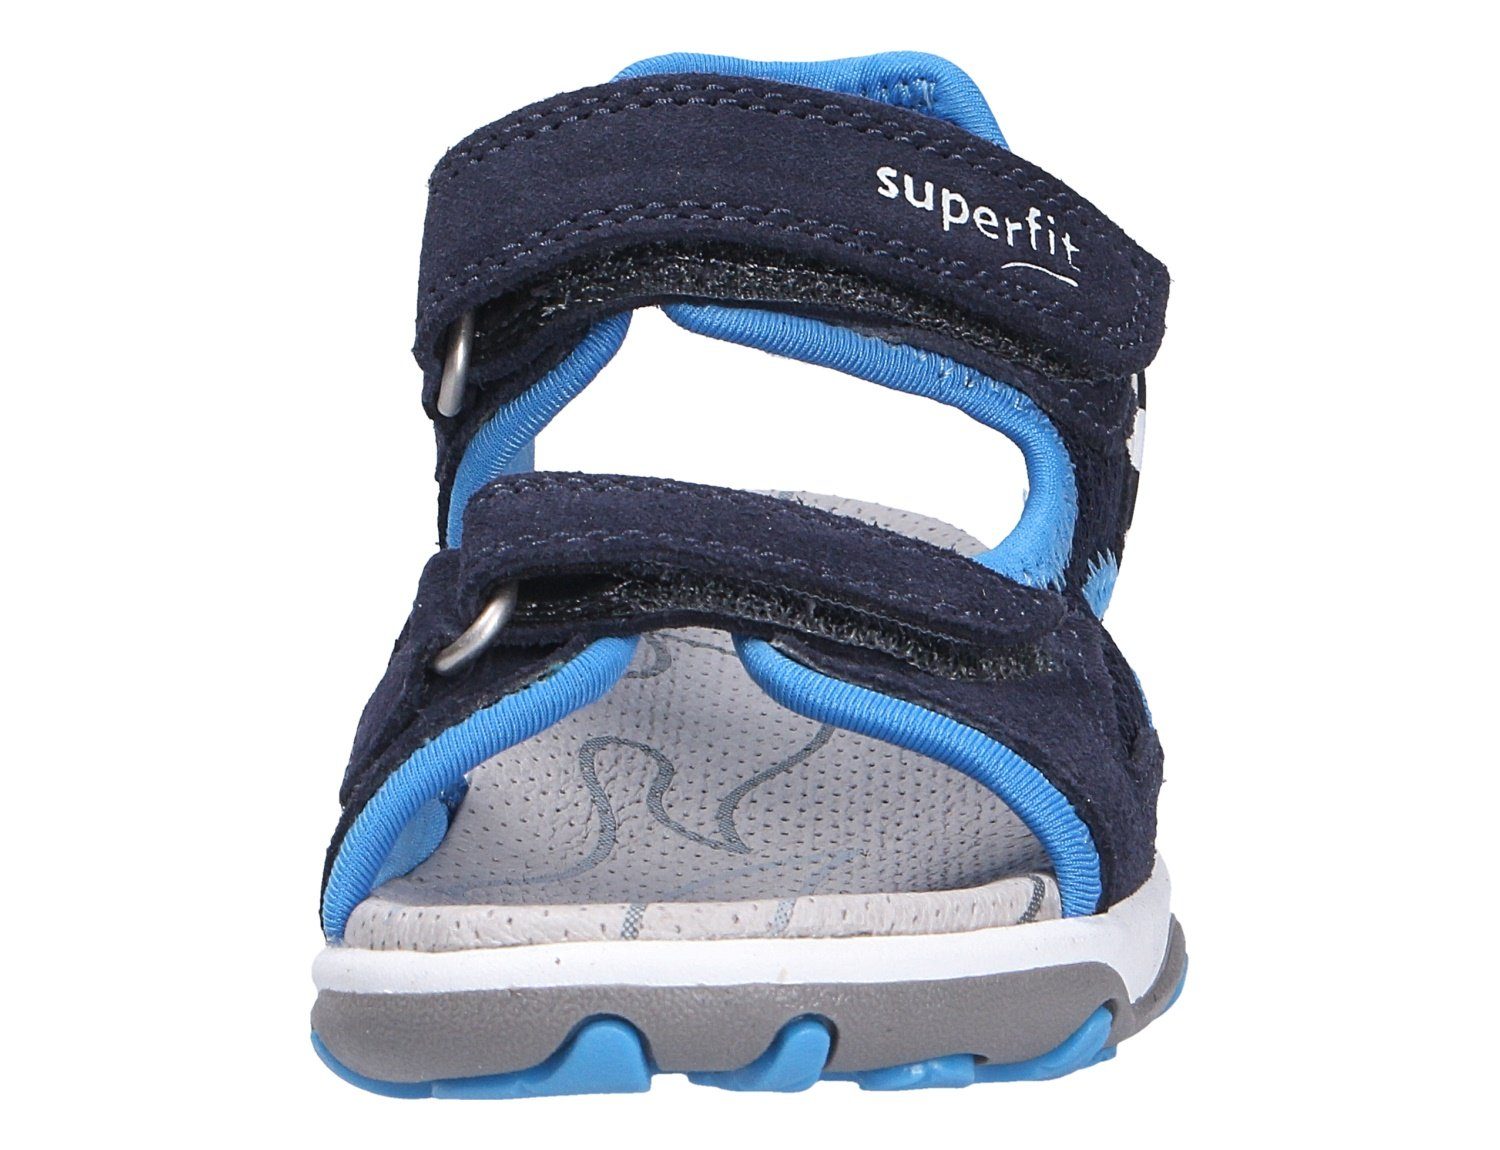 BLAU/TÜRKIS (20401812) Qualität Robuste Sandale Superfit